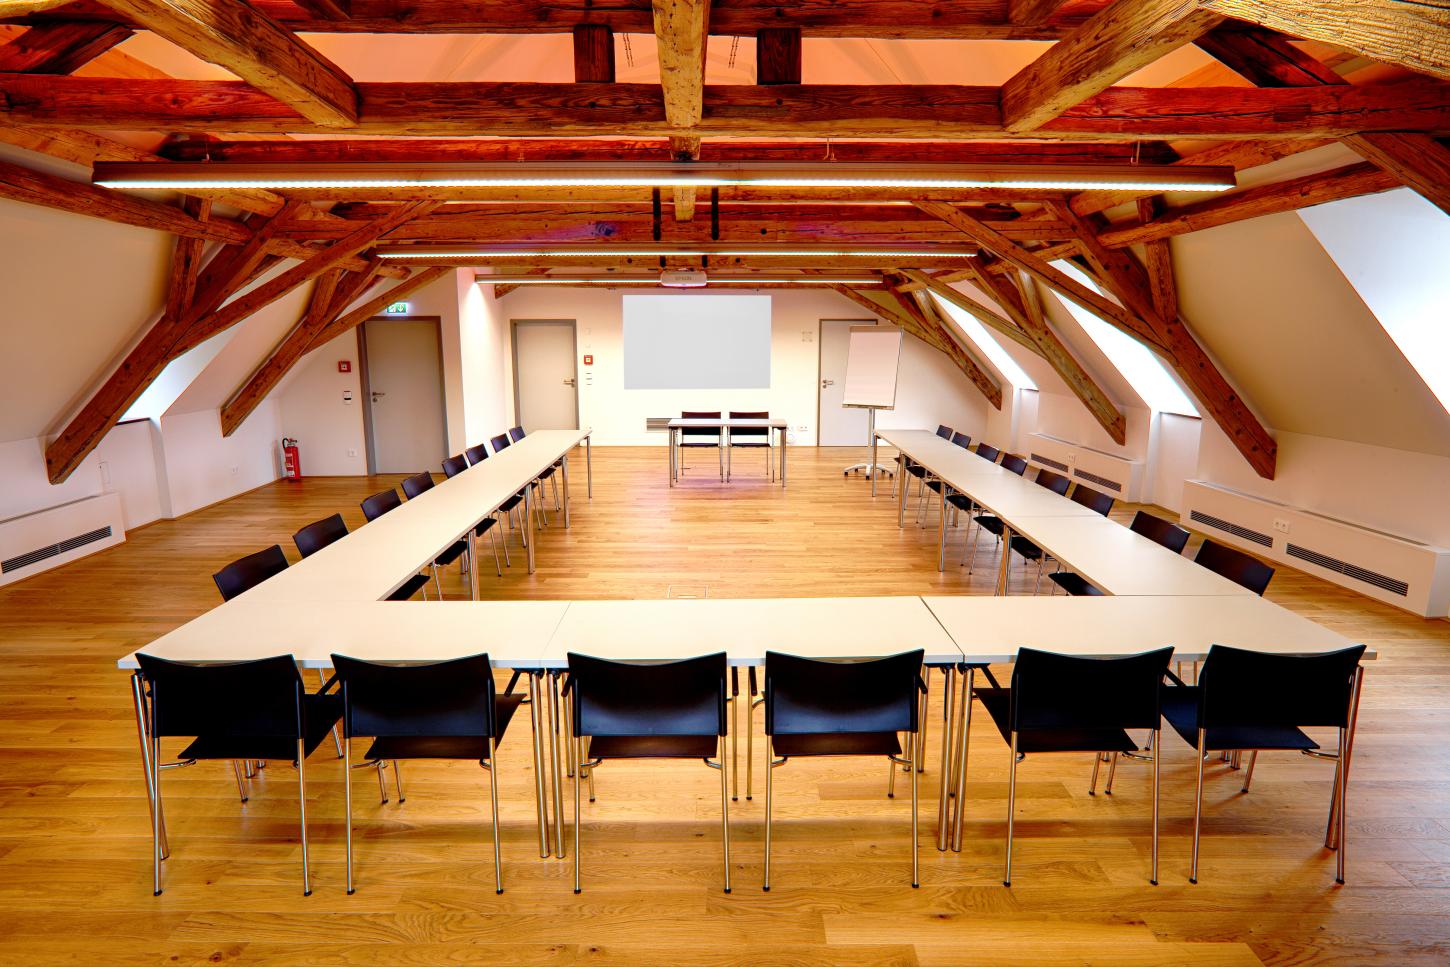 Großer Vortragssaal im Dachgeschoss des Krügerhauses mit offenem Dachstuhl. Im Raum steht eine U-förmige Tafel mit Stühlen vor einer Leinwand mit Beamer.